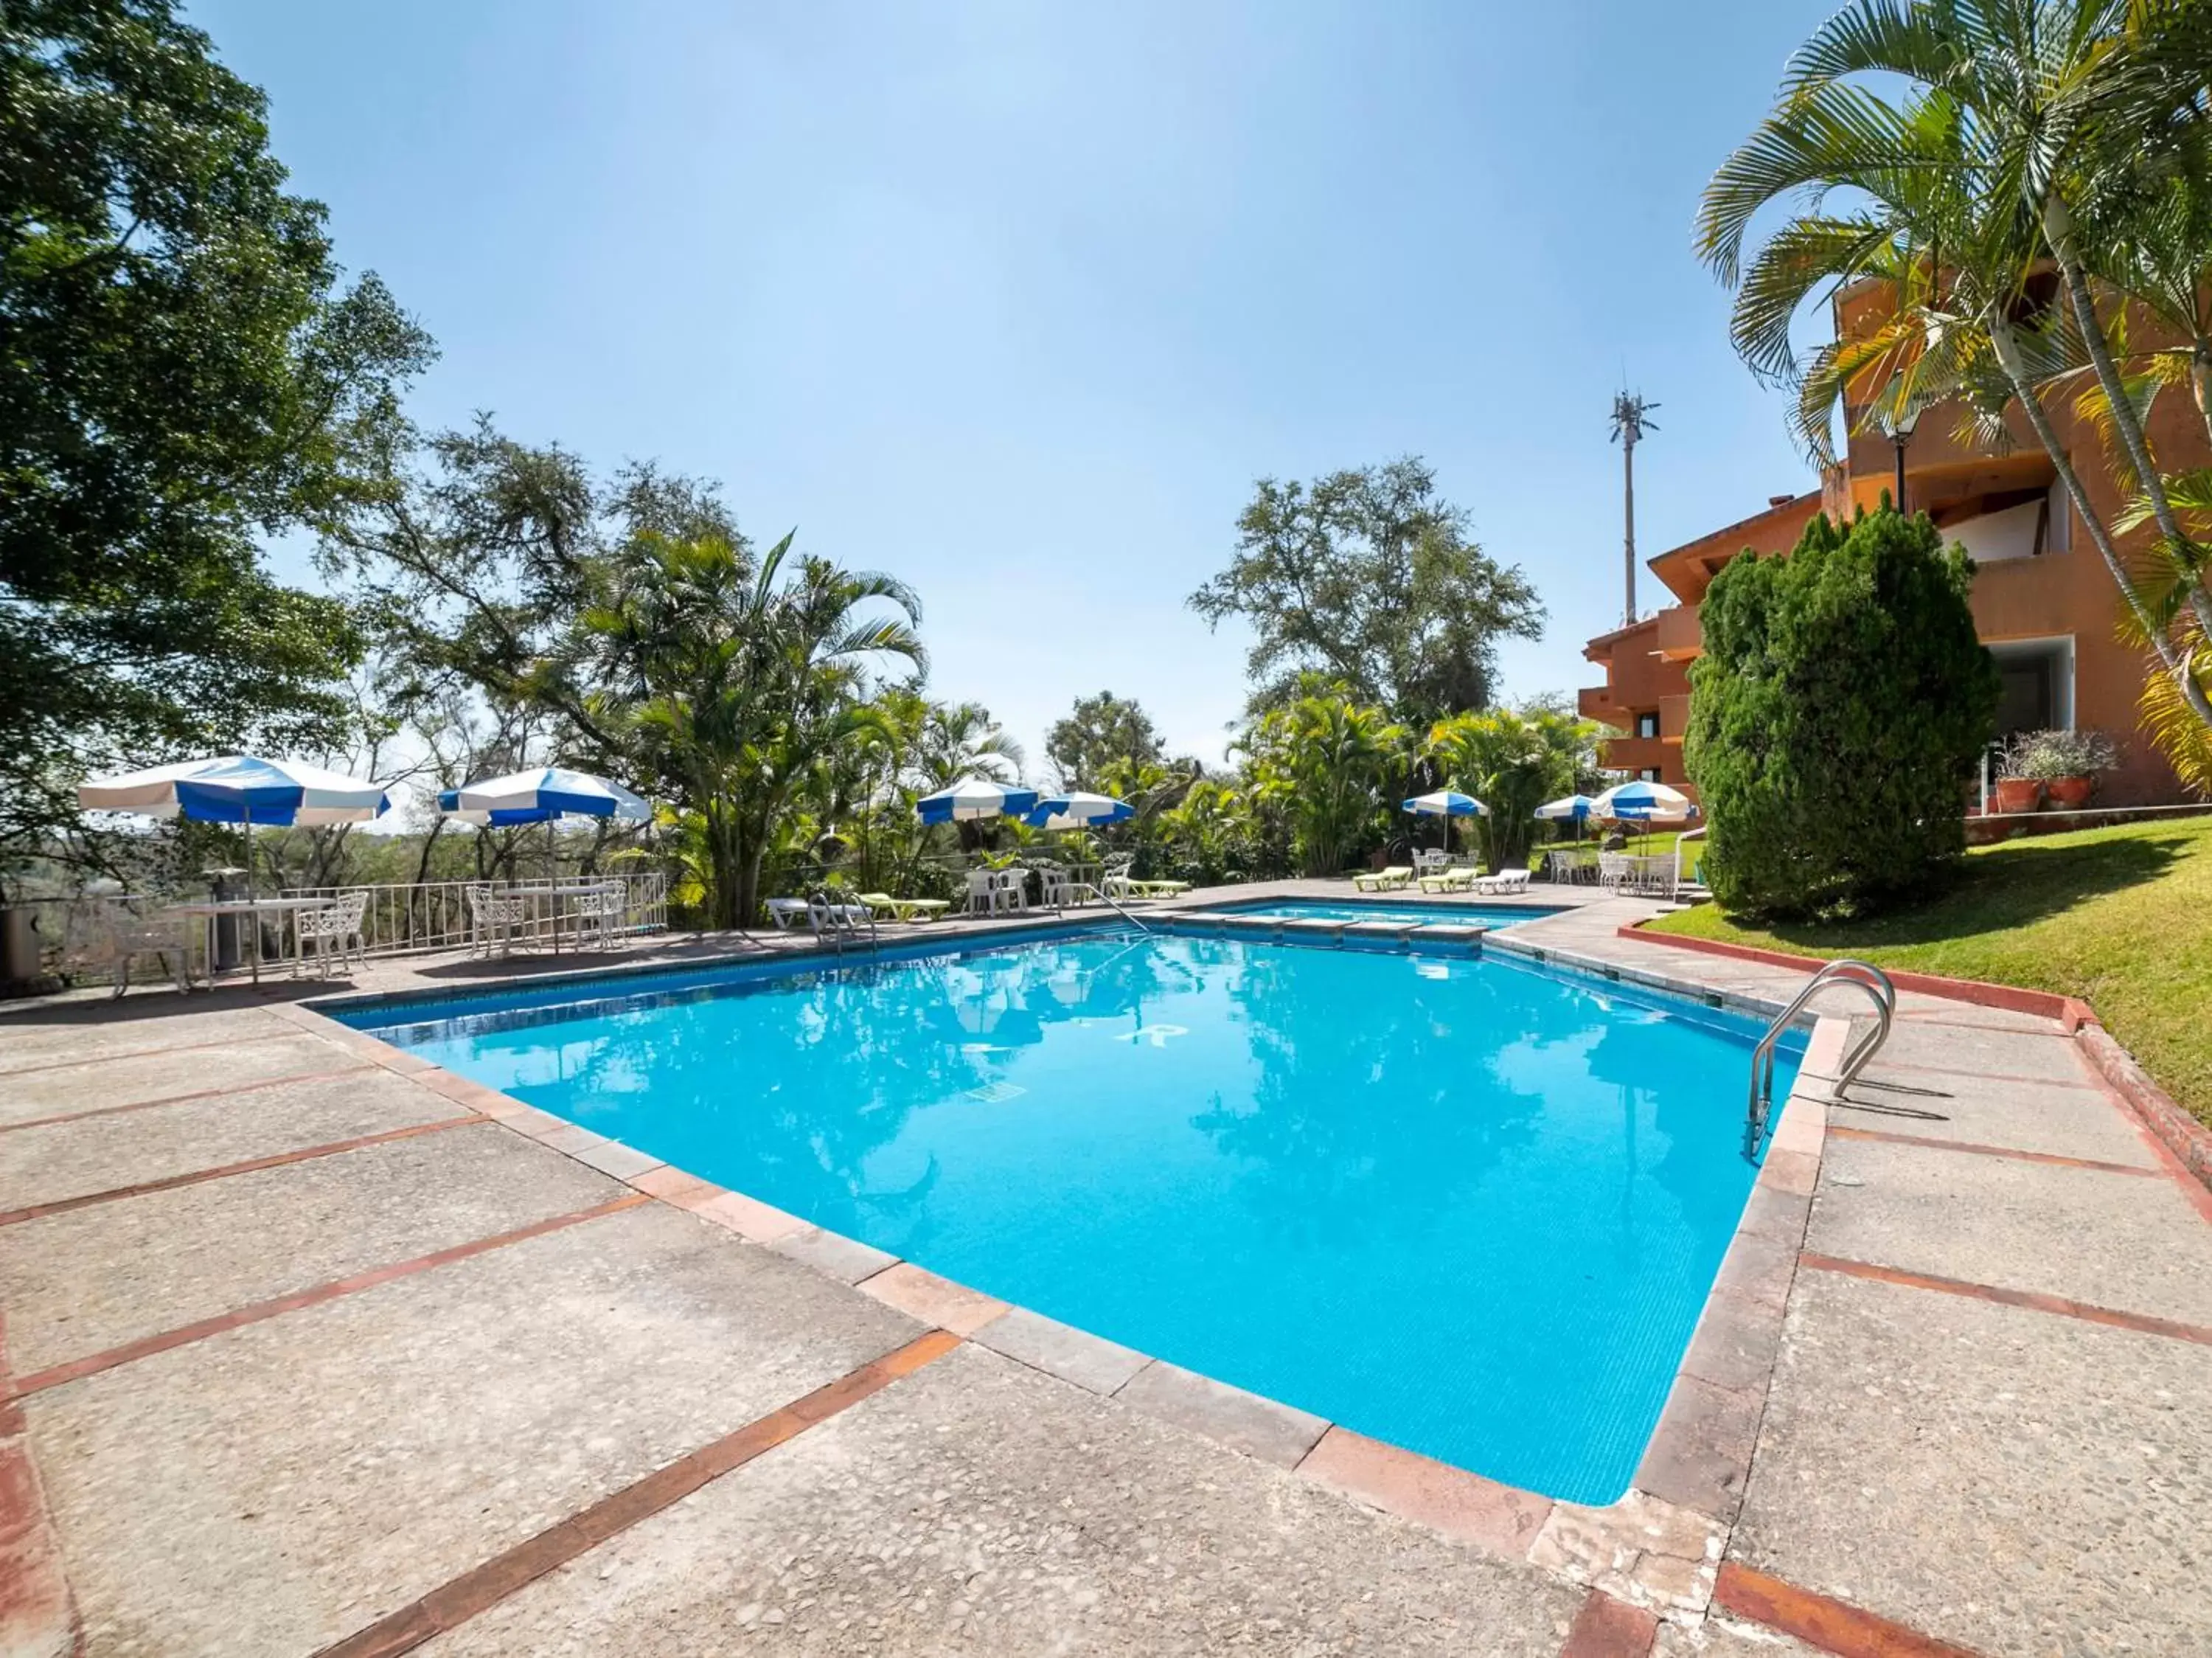 Swimming Pool in Hotel La Rinconada Santa Fe